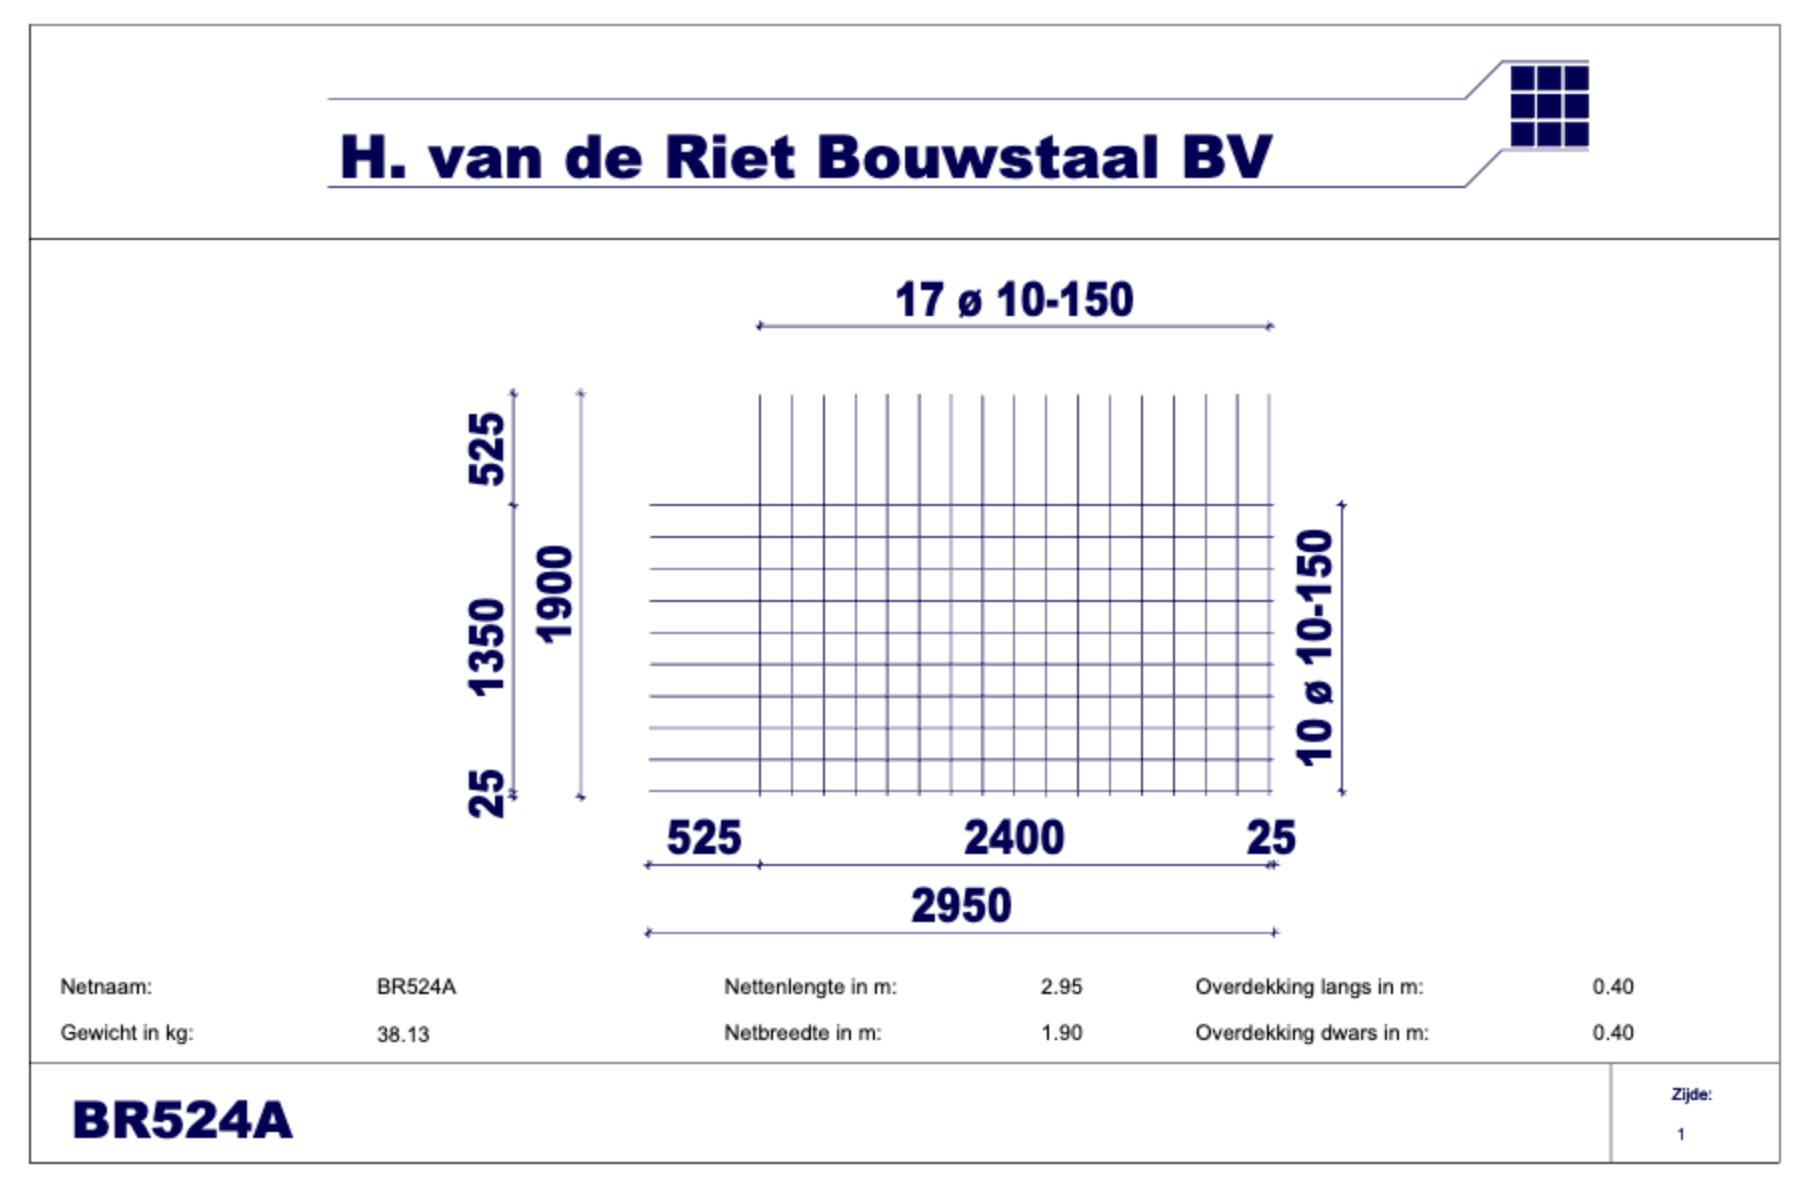 BR524A | H. van de Riet Bouwstaal B.V. | sterk in bouwstaal